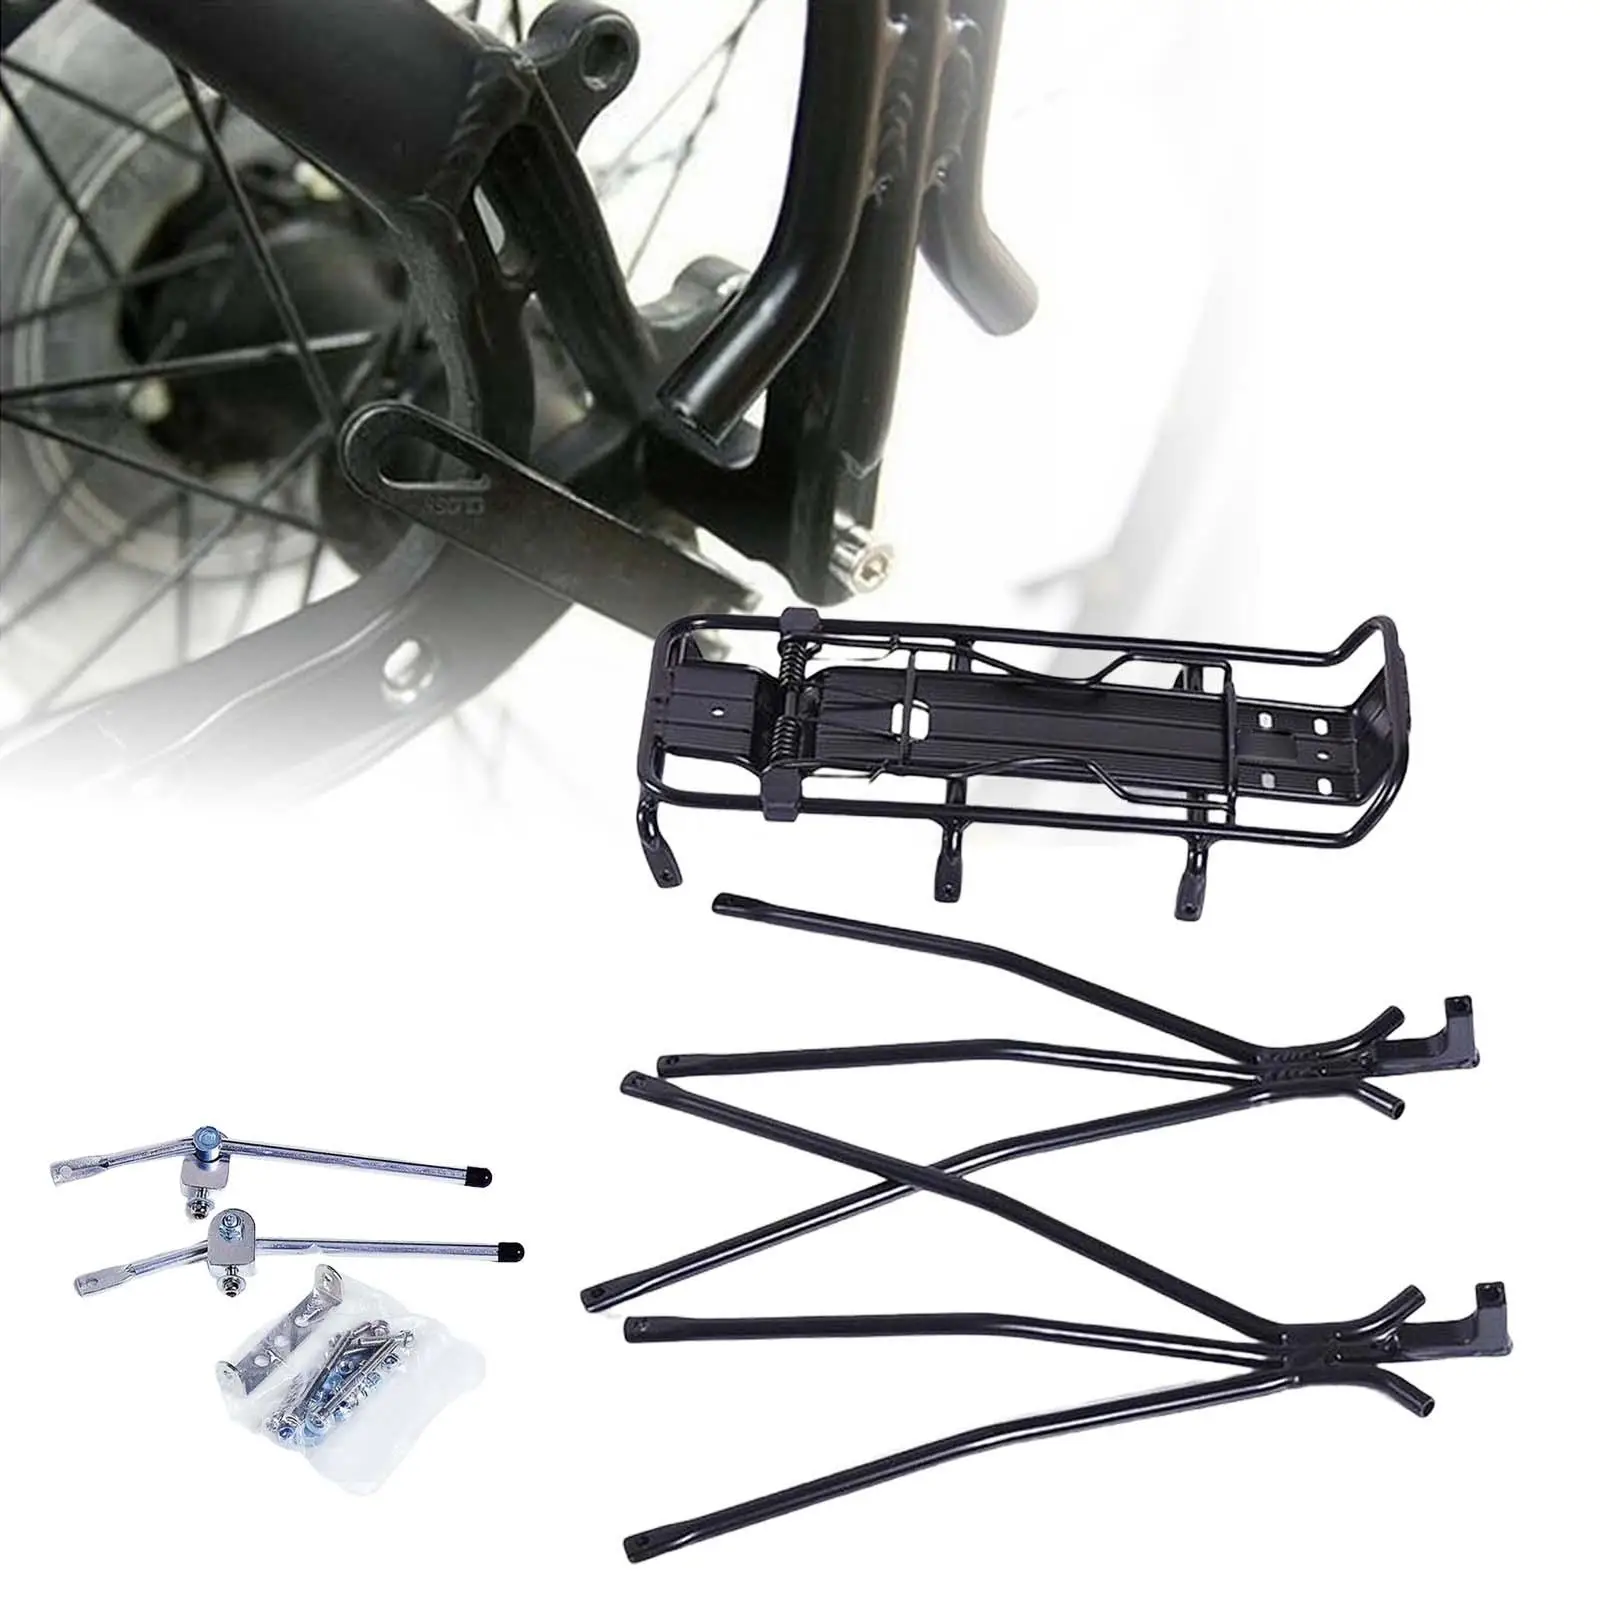 Aluminum  Rear Carrier Rack   Pannier Rack Cycling Equipment